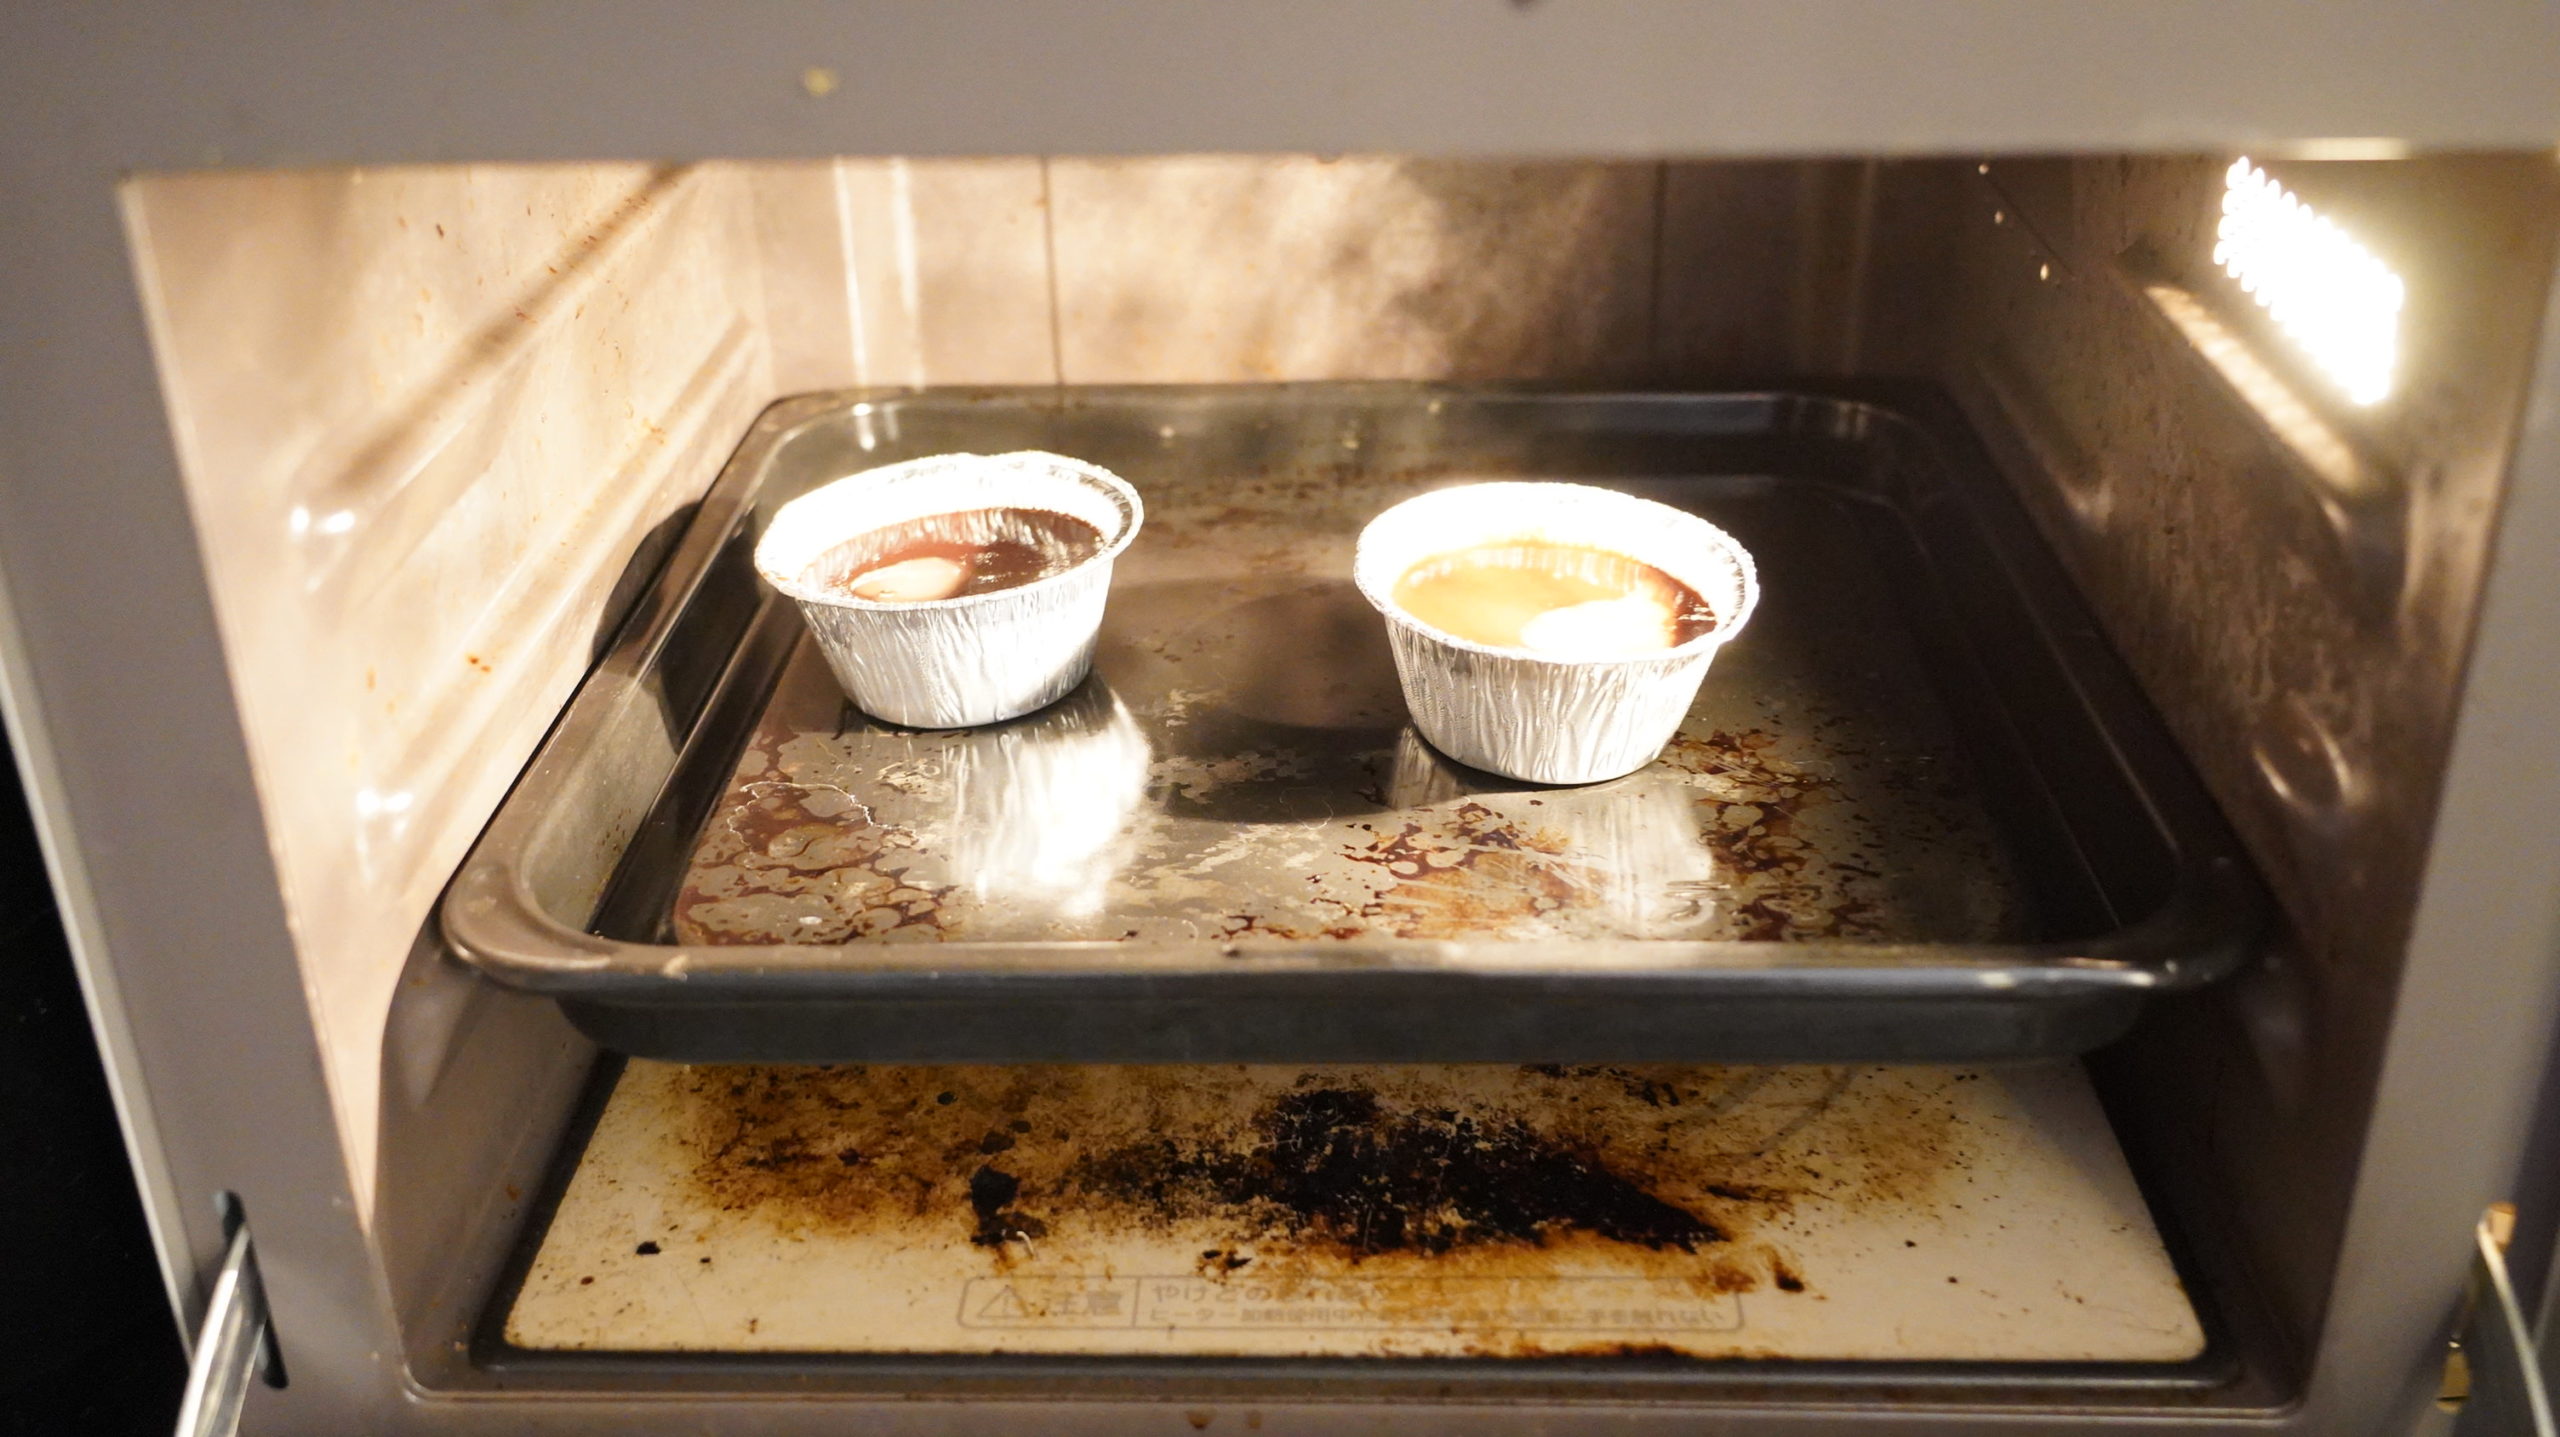 ピカールの冷凍食品「モアローショコラ」をオーブンで加熱している写真